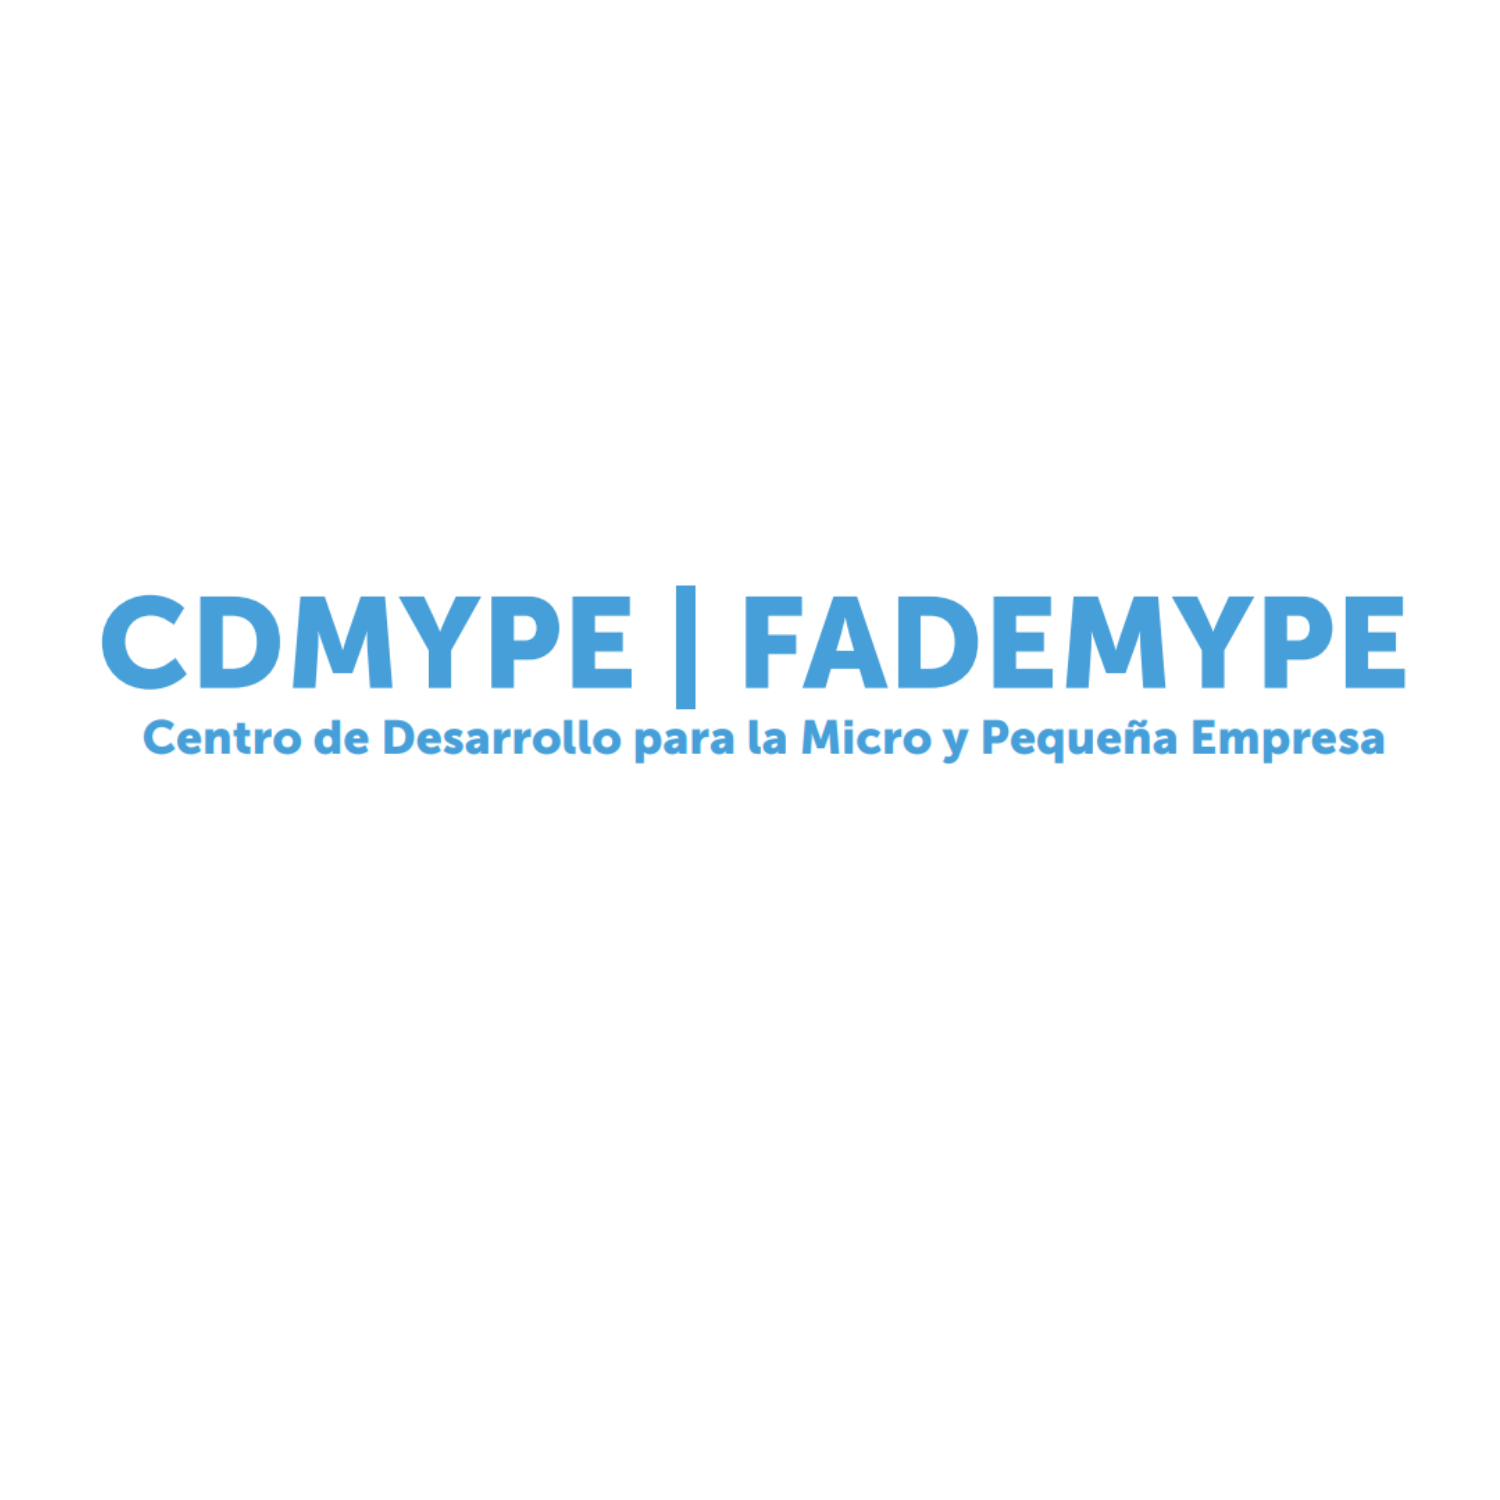 CDMYPE FADEMYPE